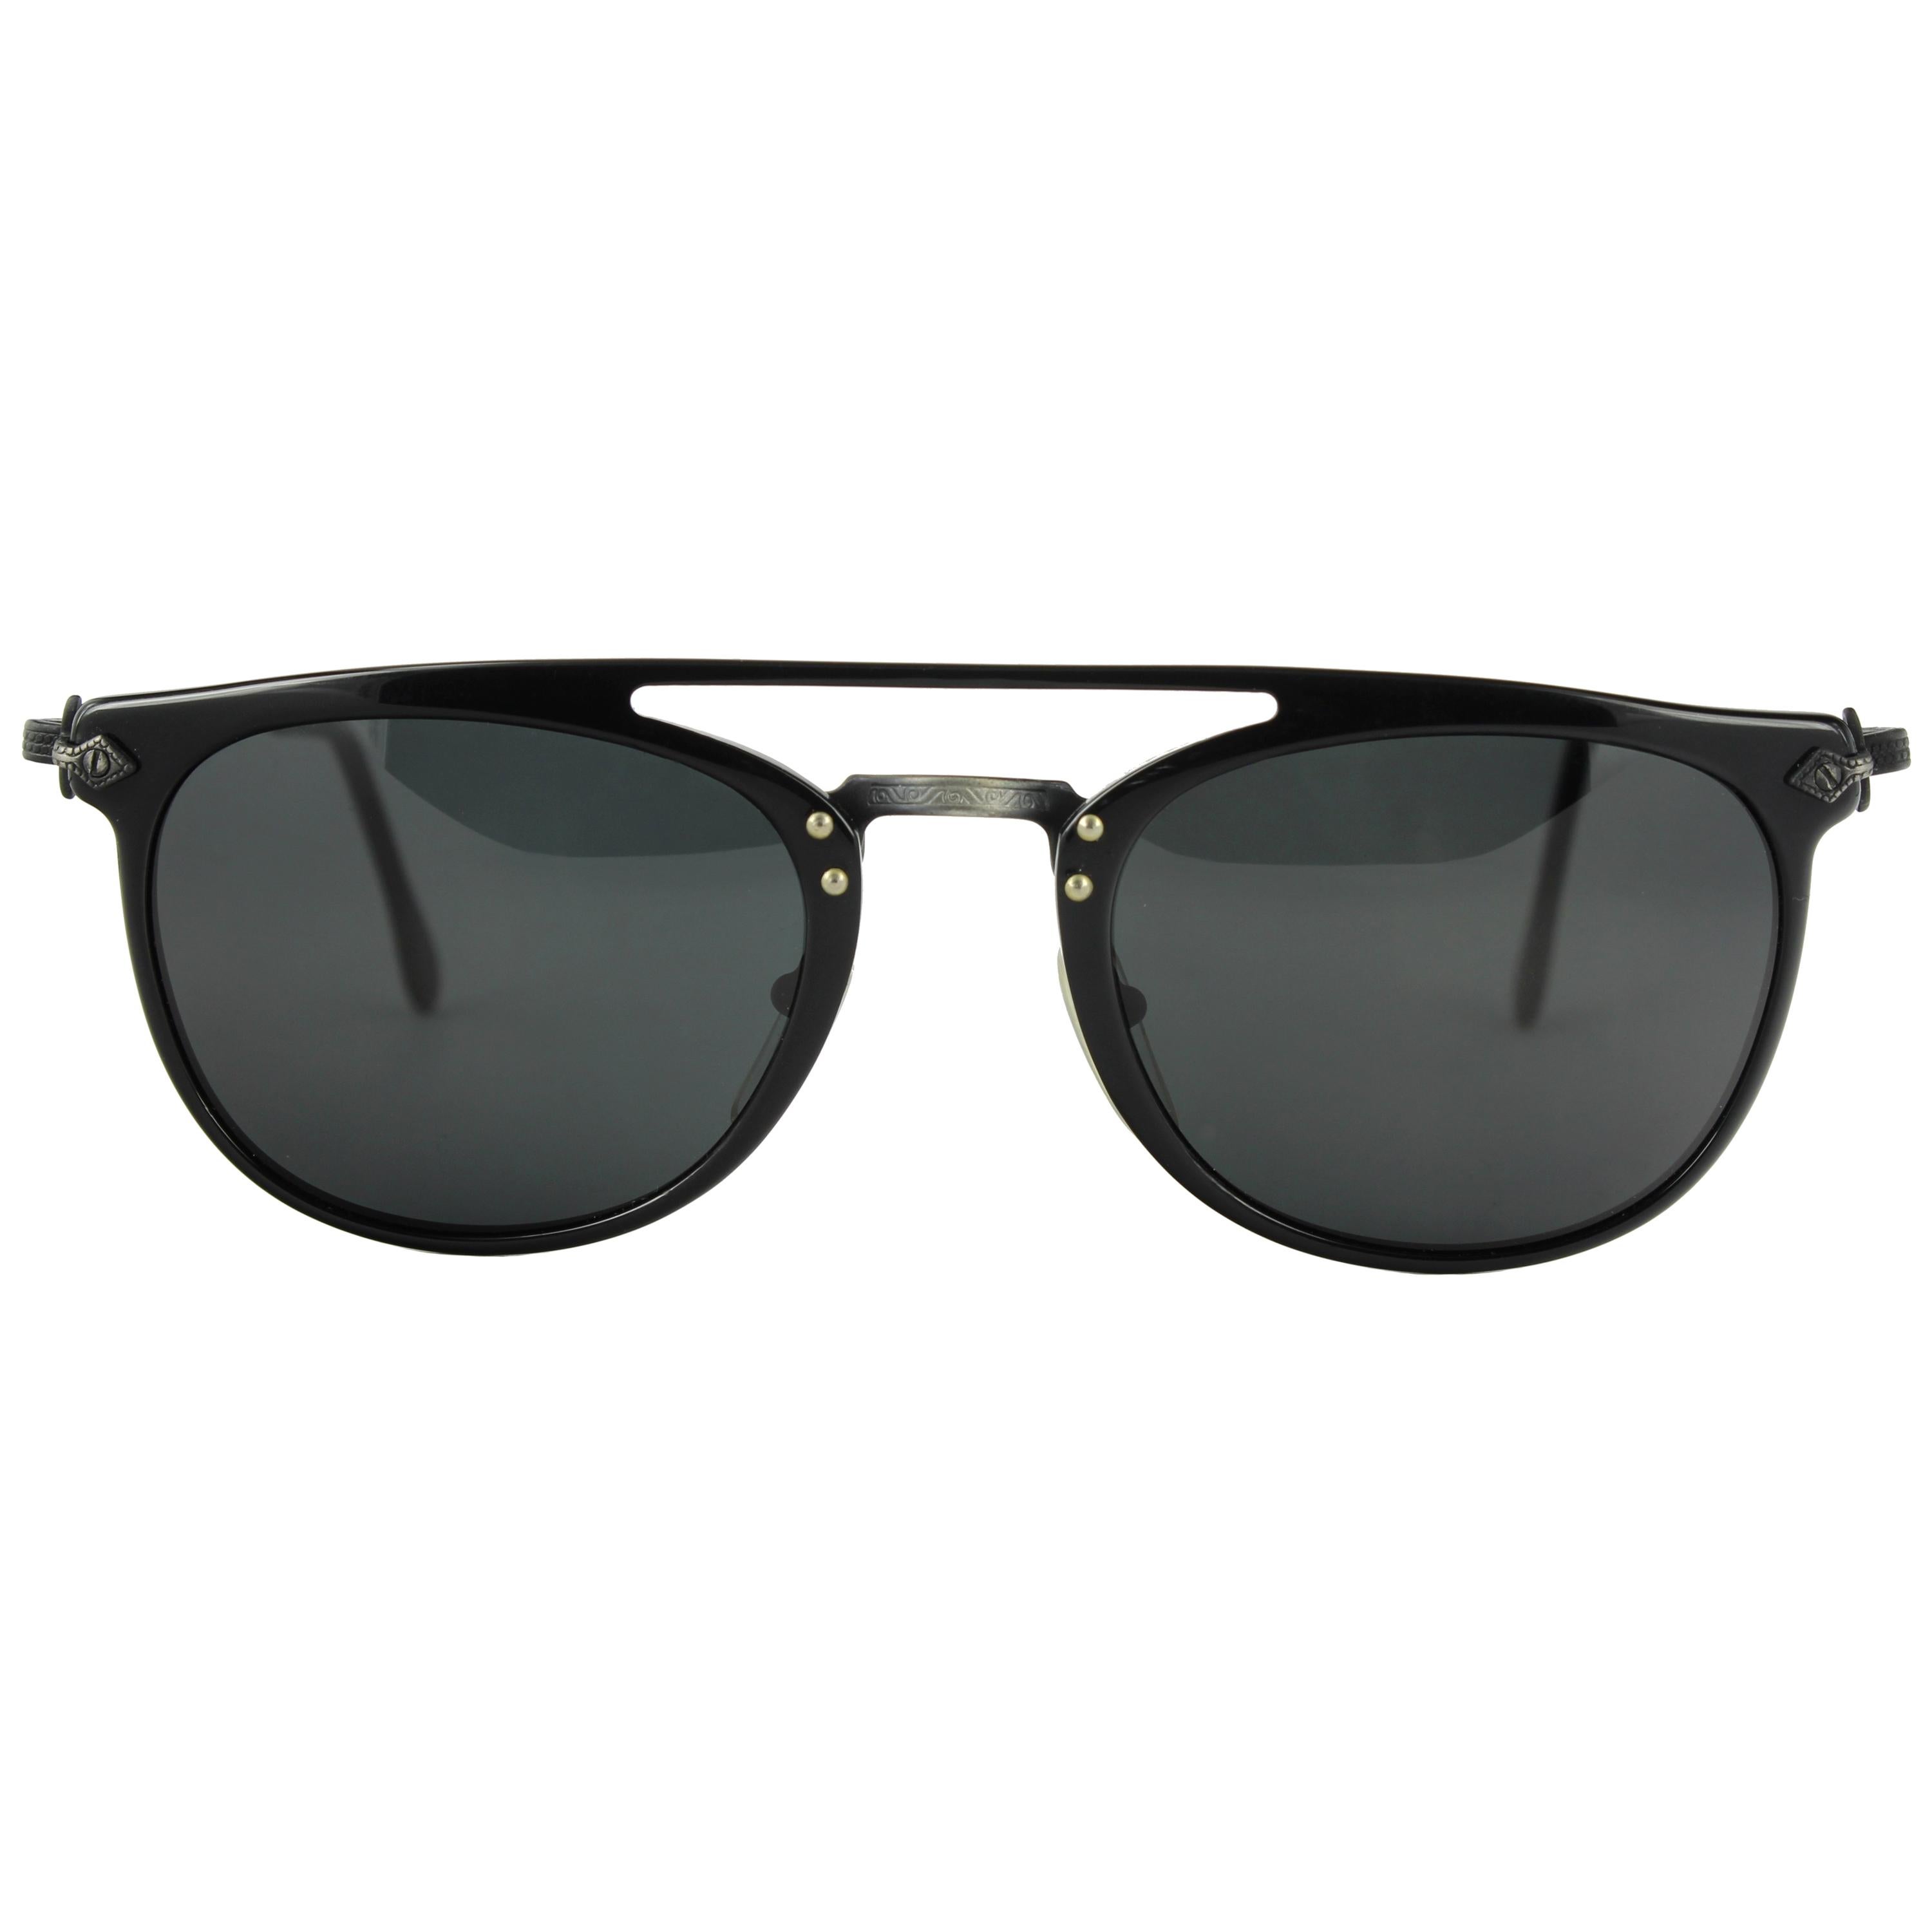 1980´s Robert La Roche Sunglasses 193 For Sale